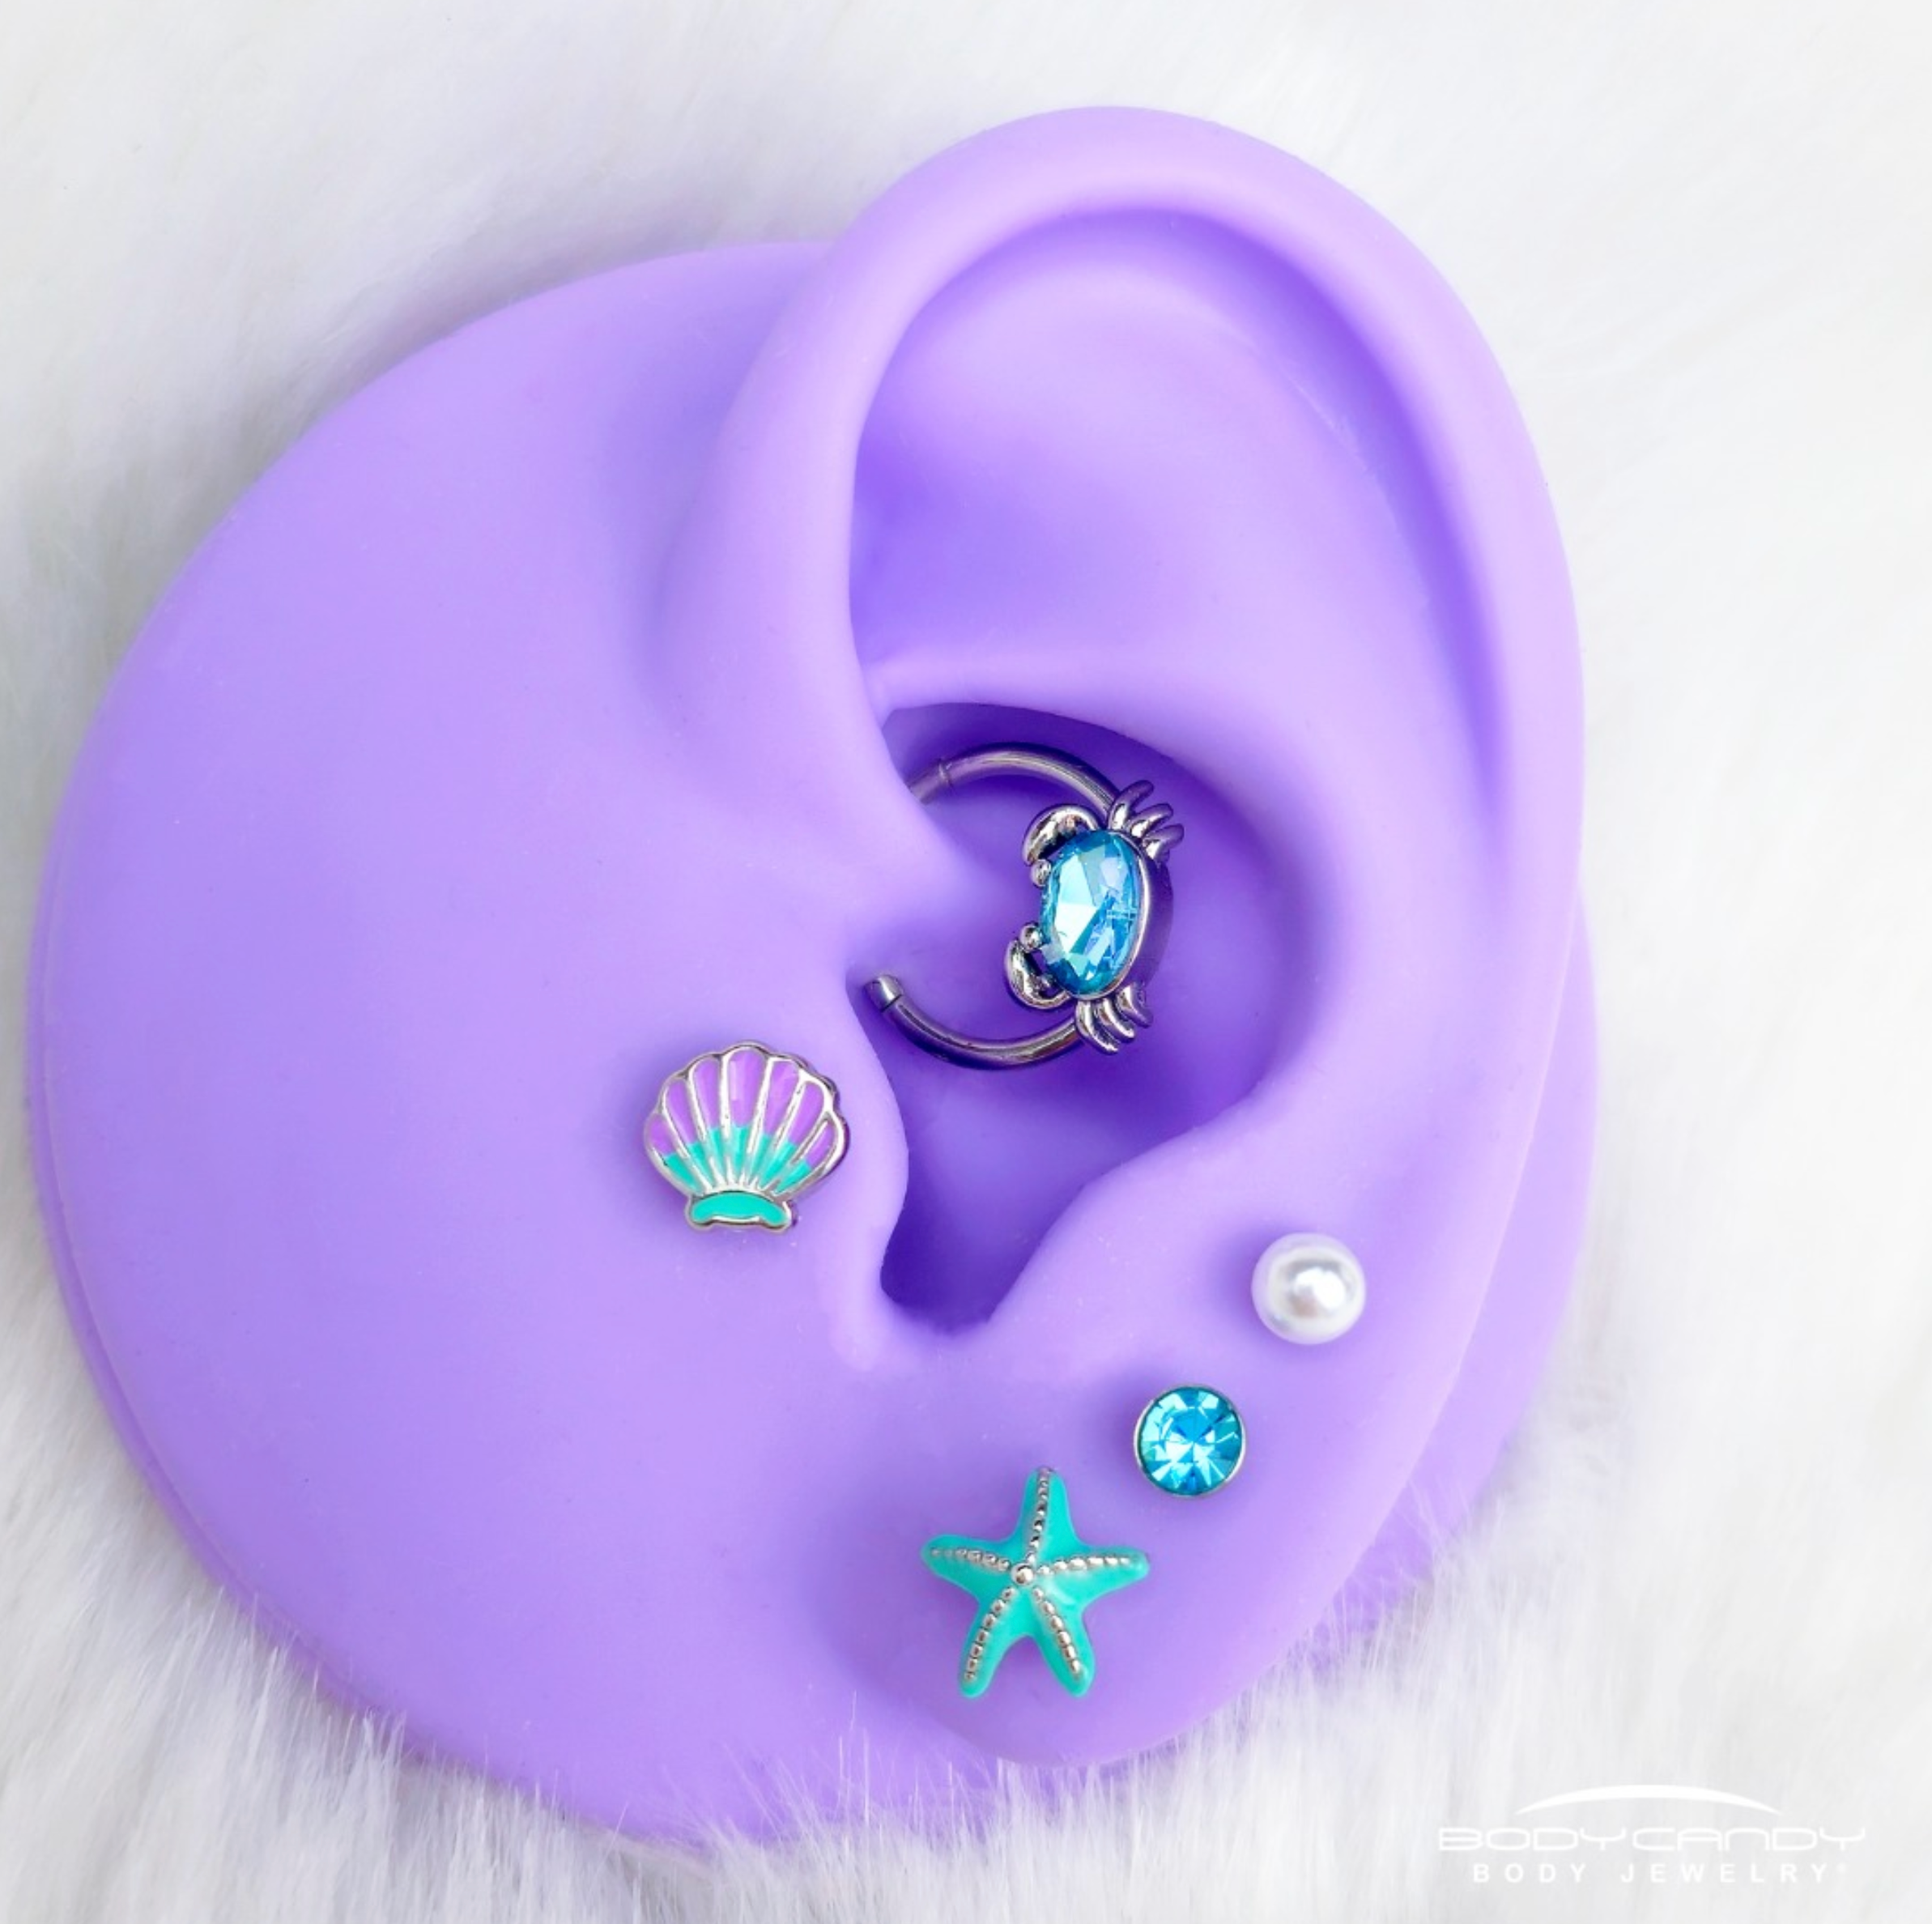 16 Gauge Blue Gem Nautical Labret Segment Ring Ear Curation Set of 5